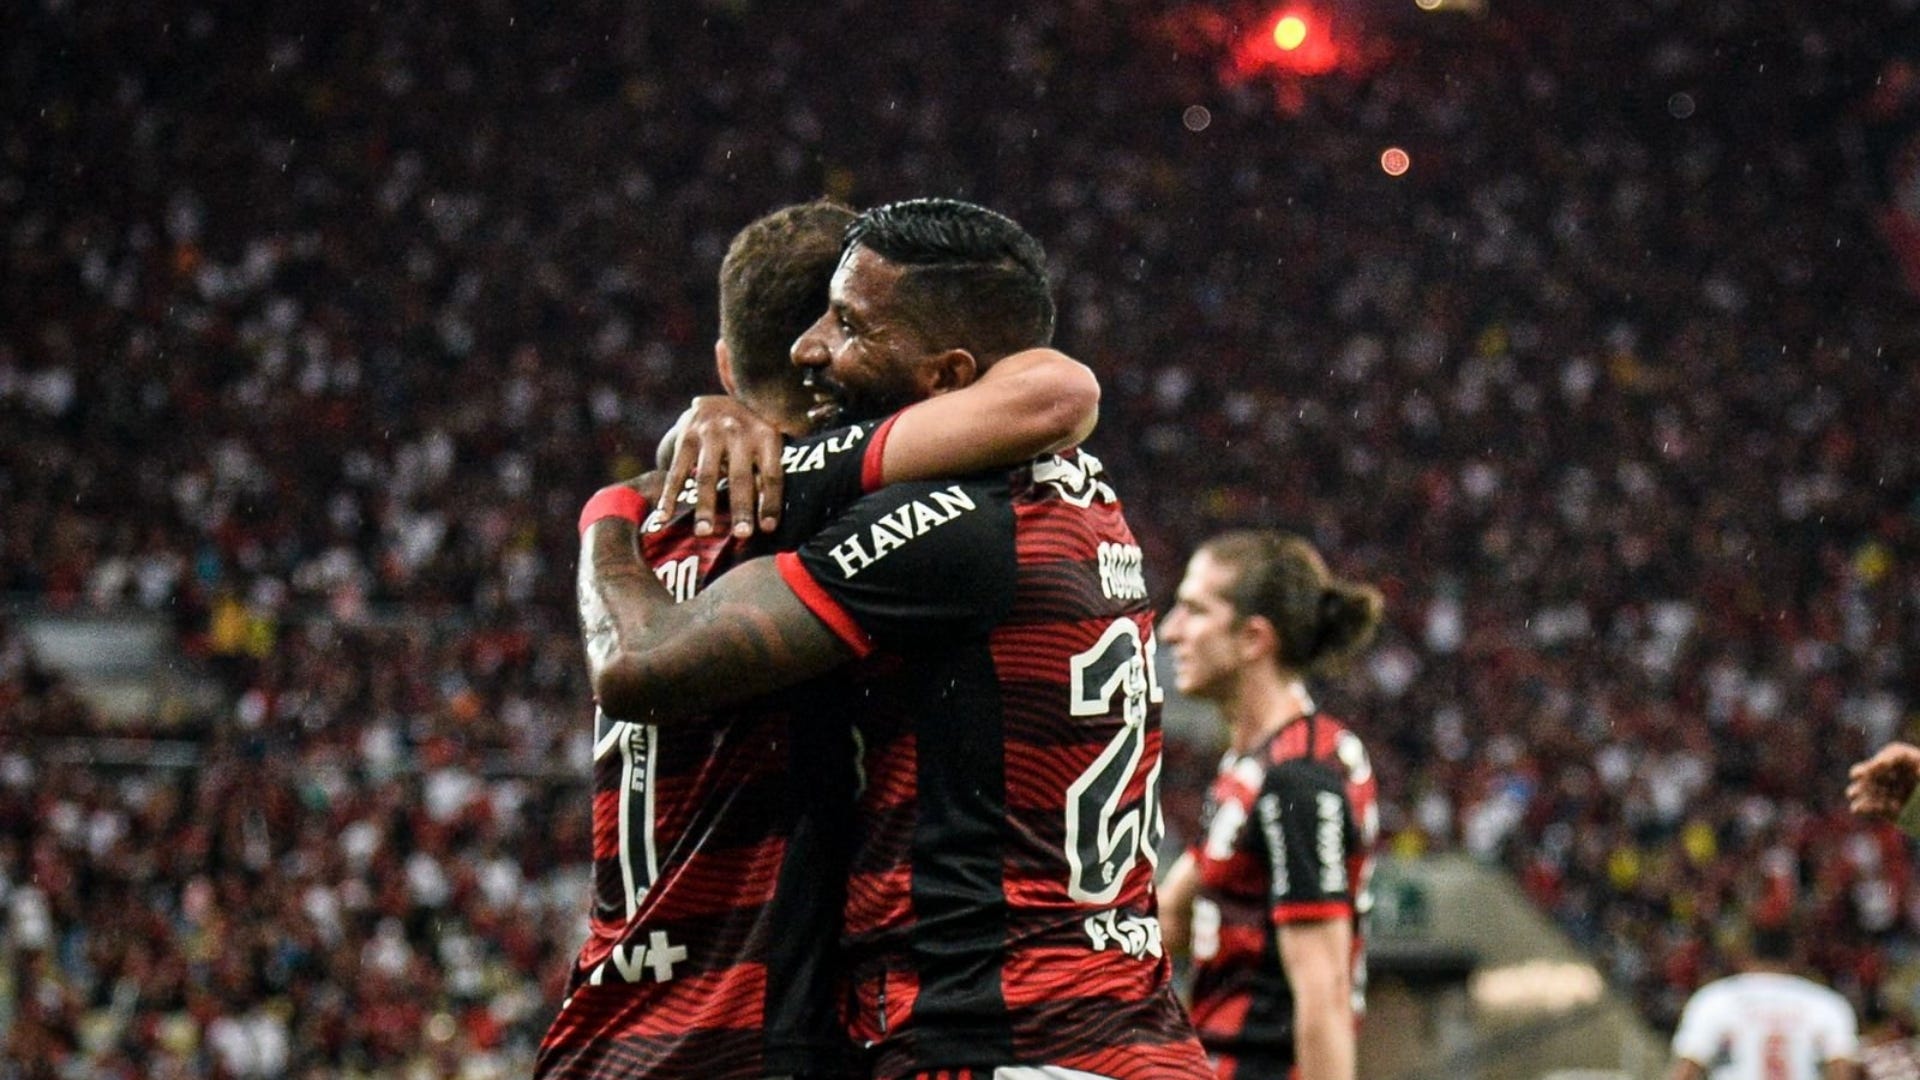 El resumen del Flamengo 1-0 Sao Paulo en vivo por la Copa do Brasil: partido online, resultado, goles, videos y formación